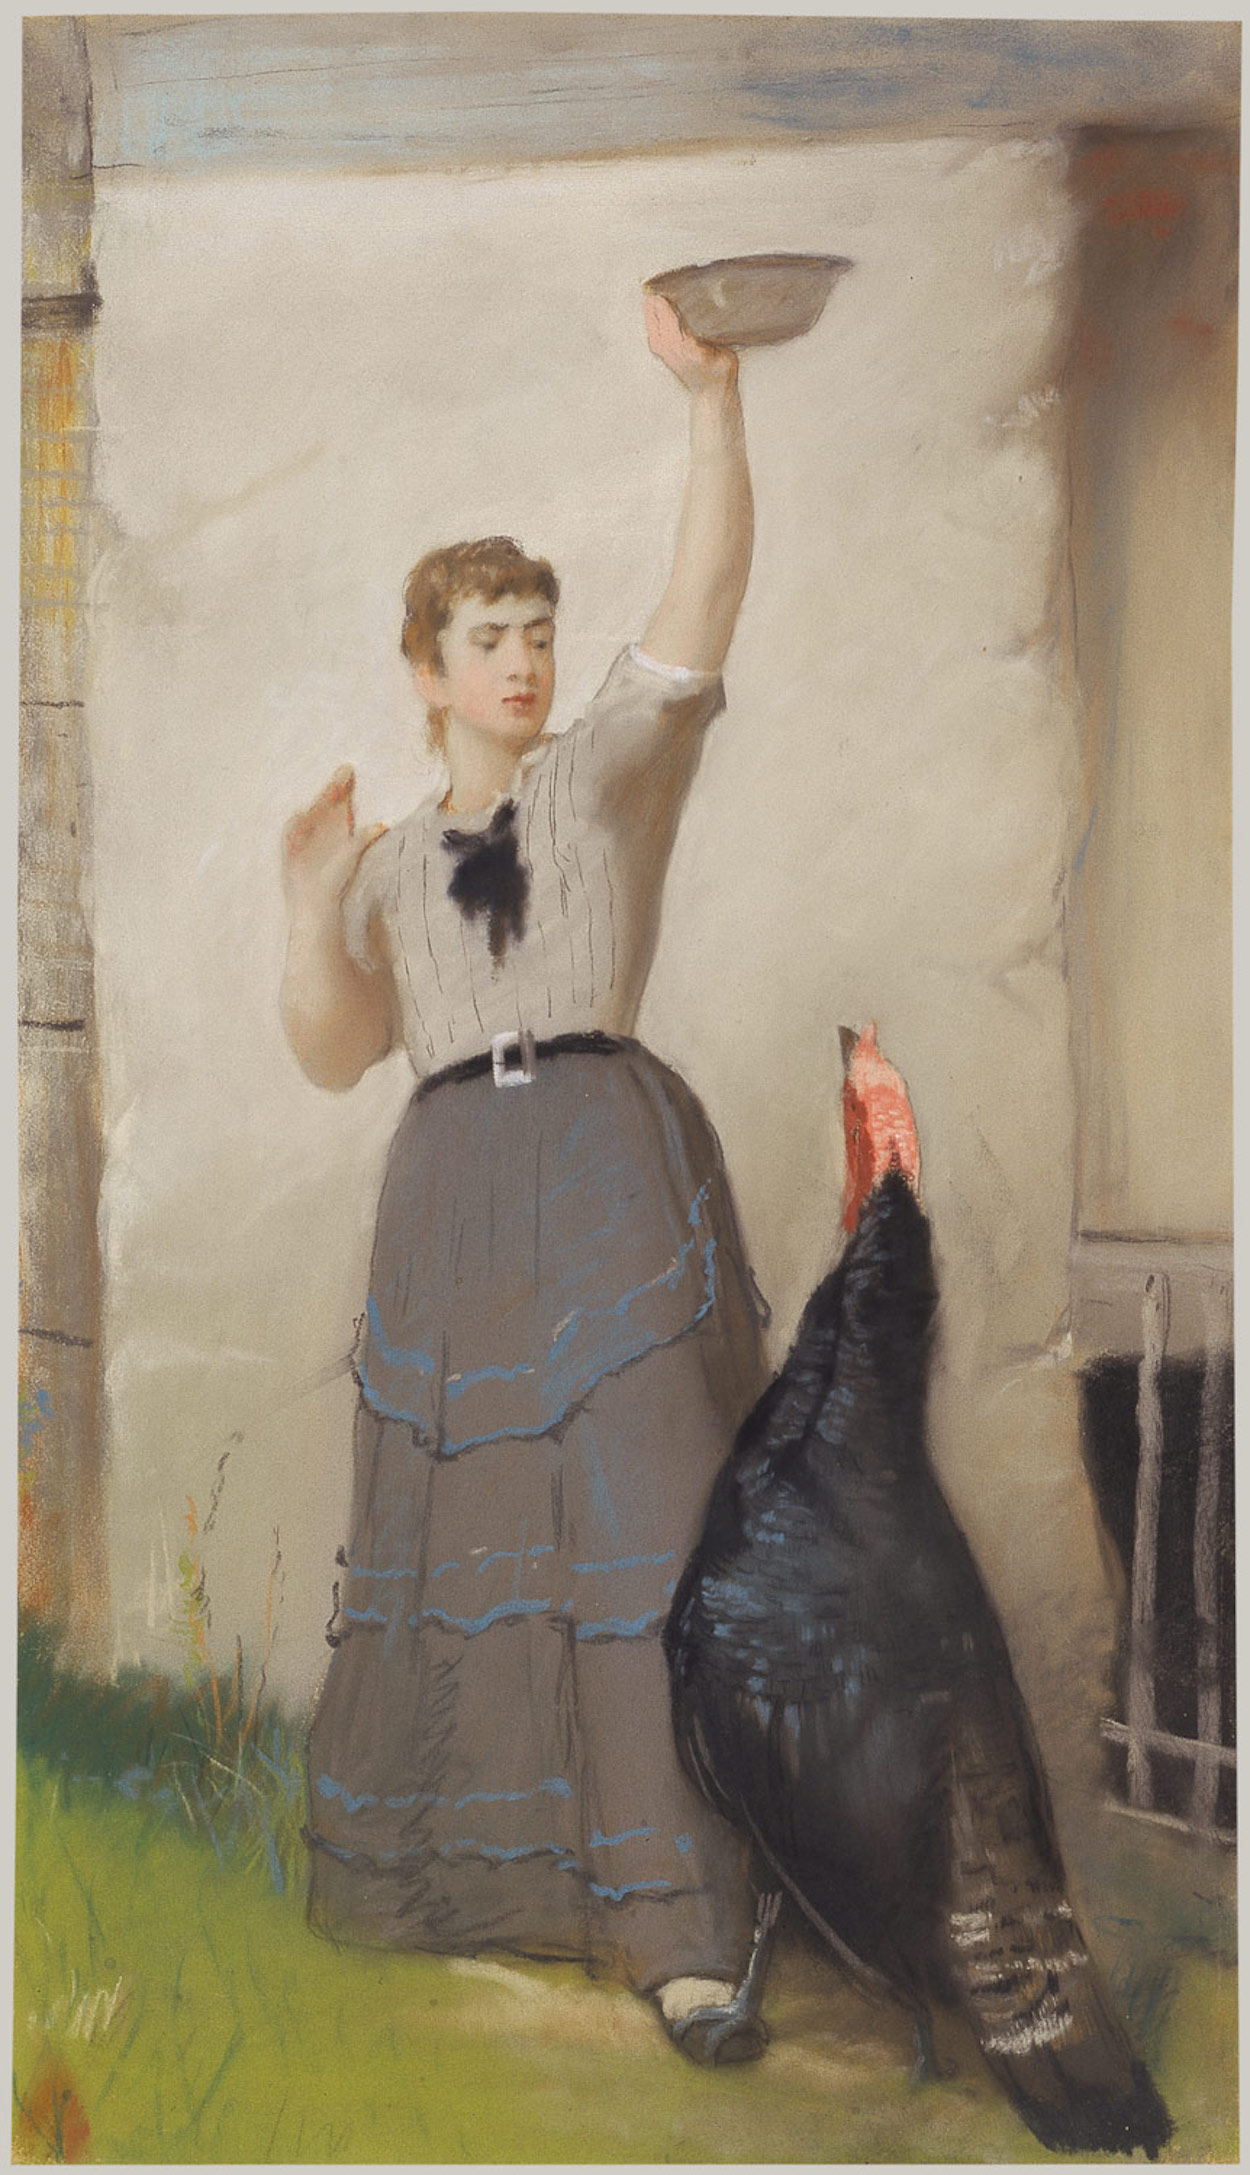 Ταΐζοντας τη γαλοπούλα by Ίστμαν Τζόνσον - ca. 1872–80 - 24 x 14 in. 